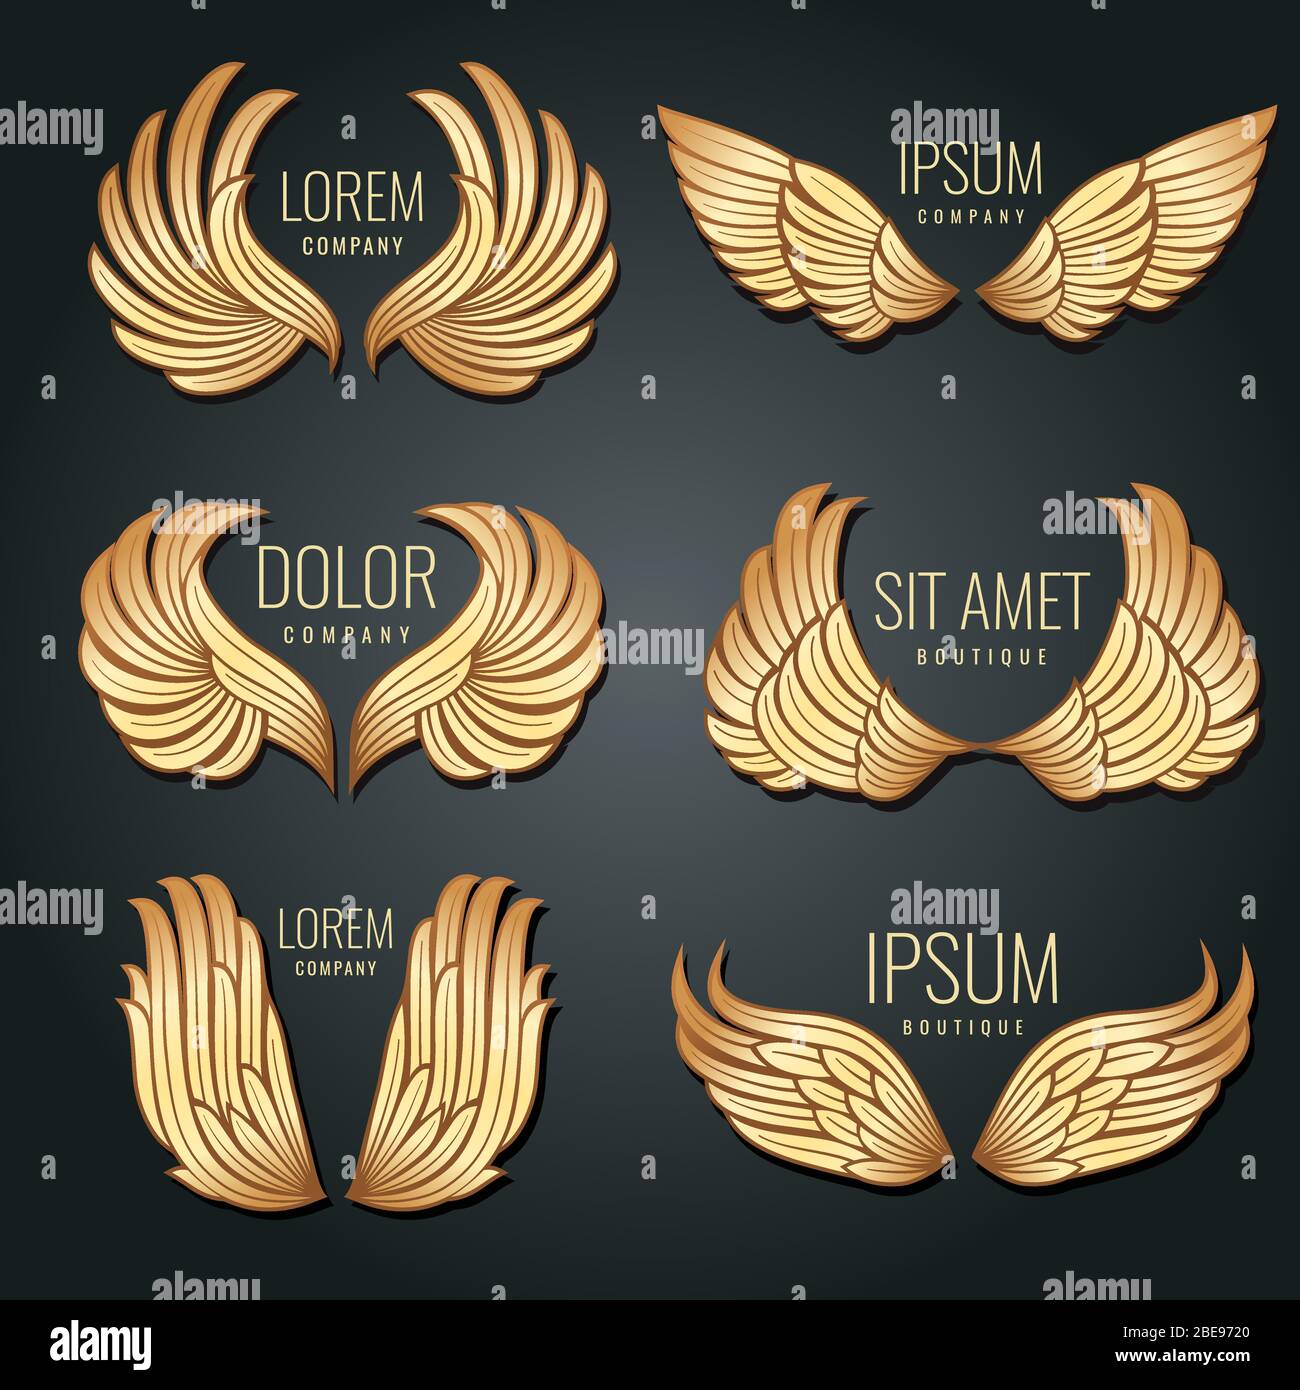 Set vettoriale con logo Golden Wing. Angeli e l'elita dell'uccello etichette d'oro per il disegno corporativo di identità. Illustrazione del distintivo delle ali di volo di Angelo e aquila Illustrazione Vettoriale